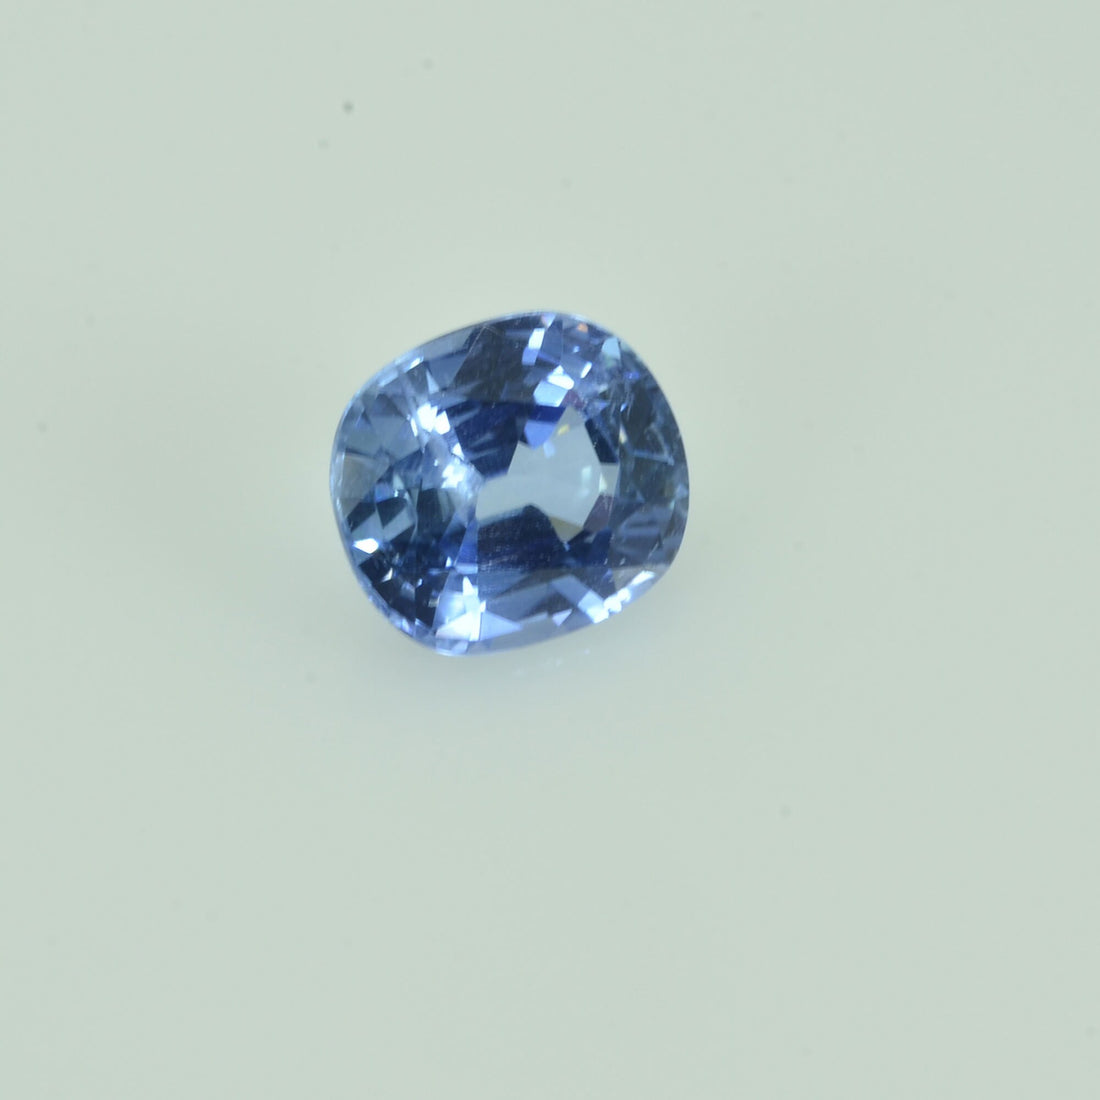 1.21 cts Natural Blue Sapphire Loose Gemstone Cushion Cut